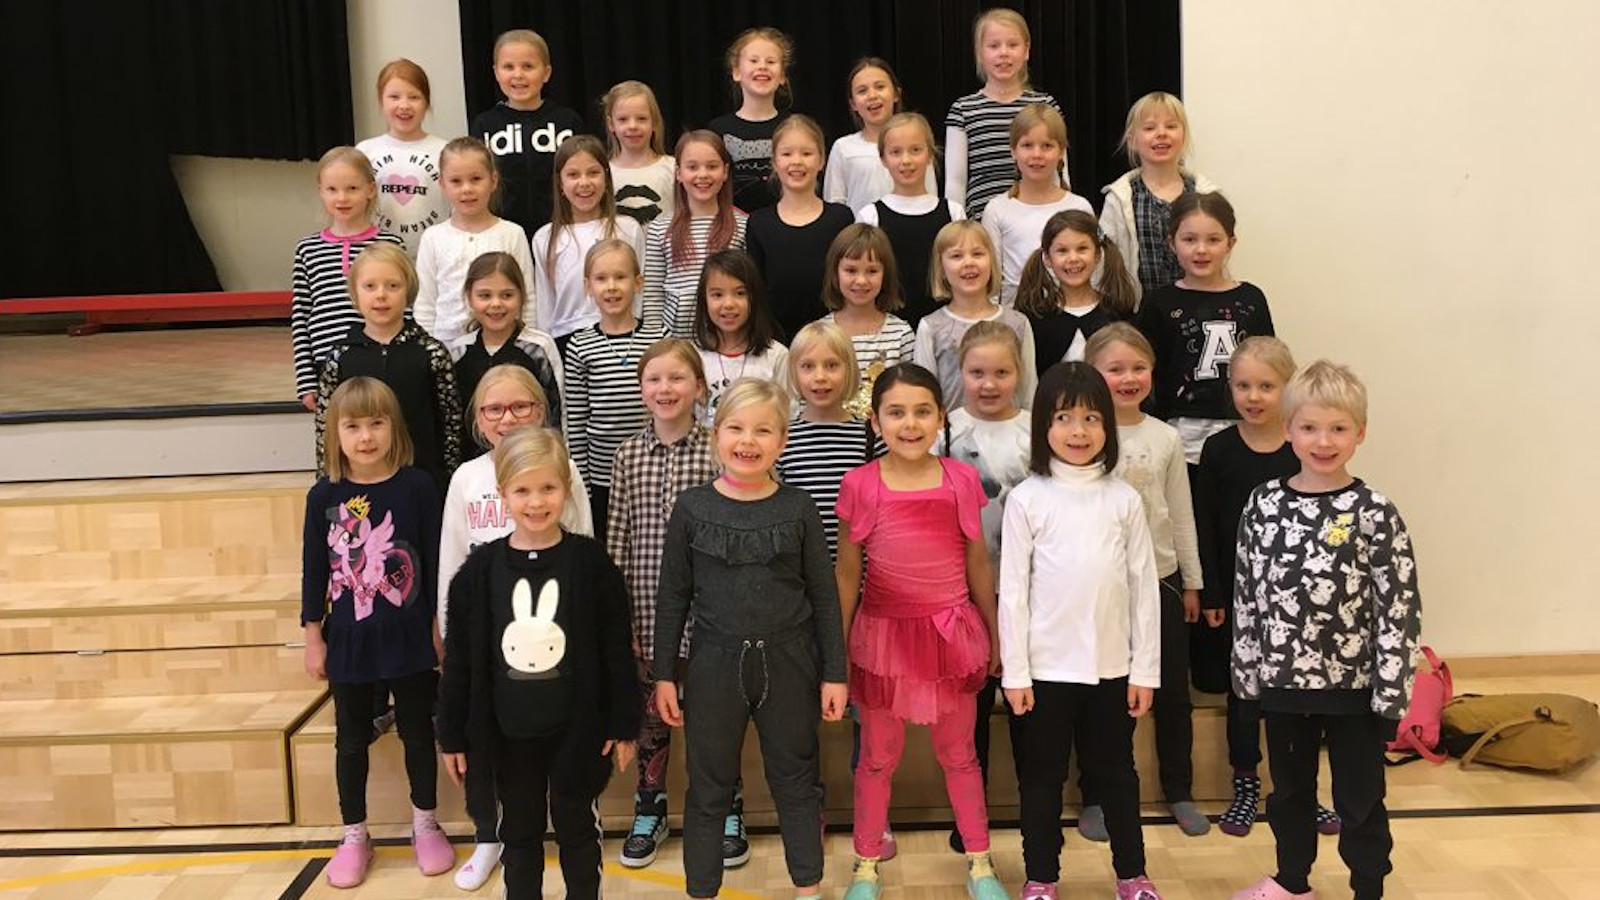 Kuvassa on Jyväskylän normaalikoulun pienten kuoro harjoituksissa ja he ovat neljässä rivissä omissa vaatteissaan.